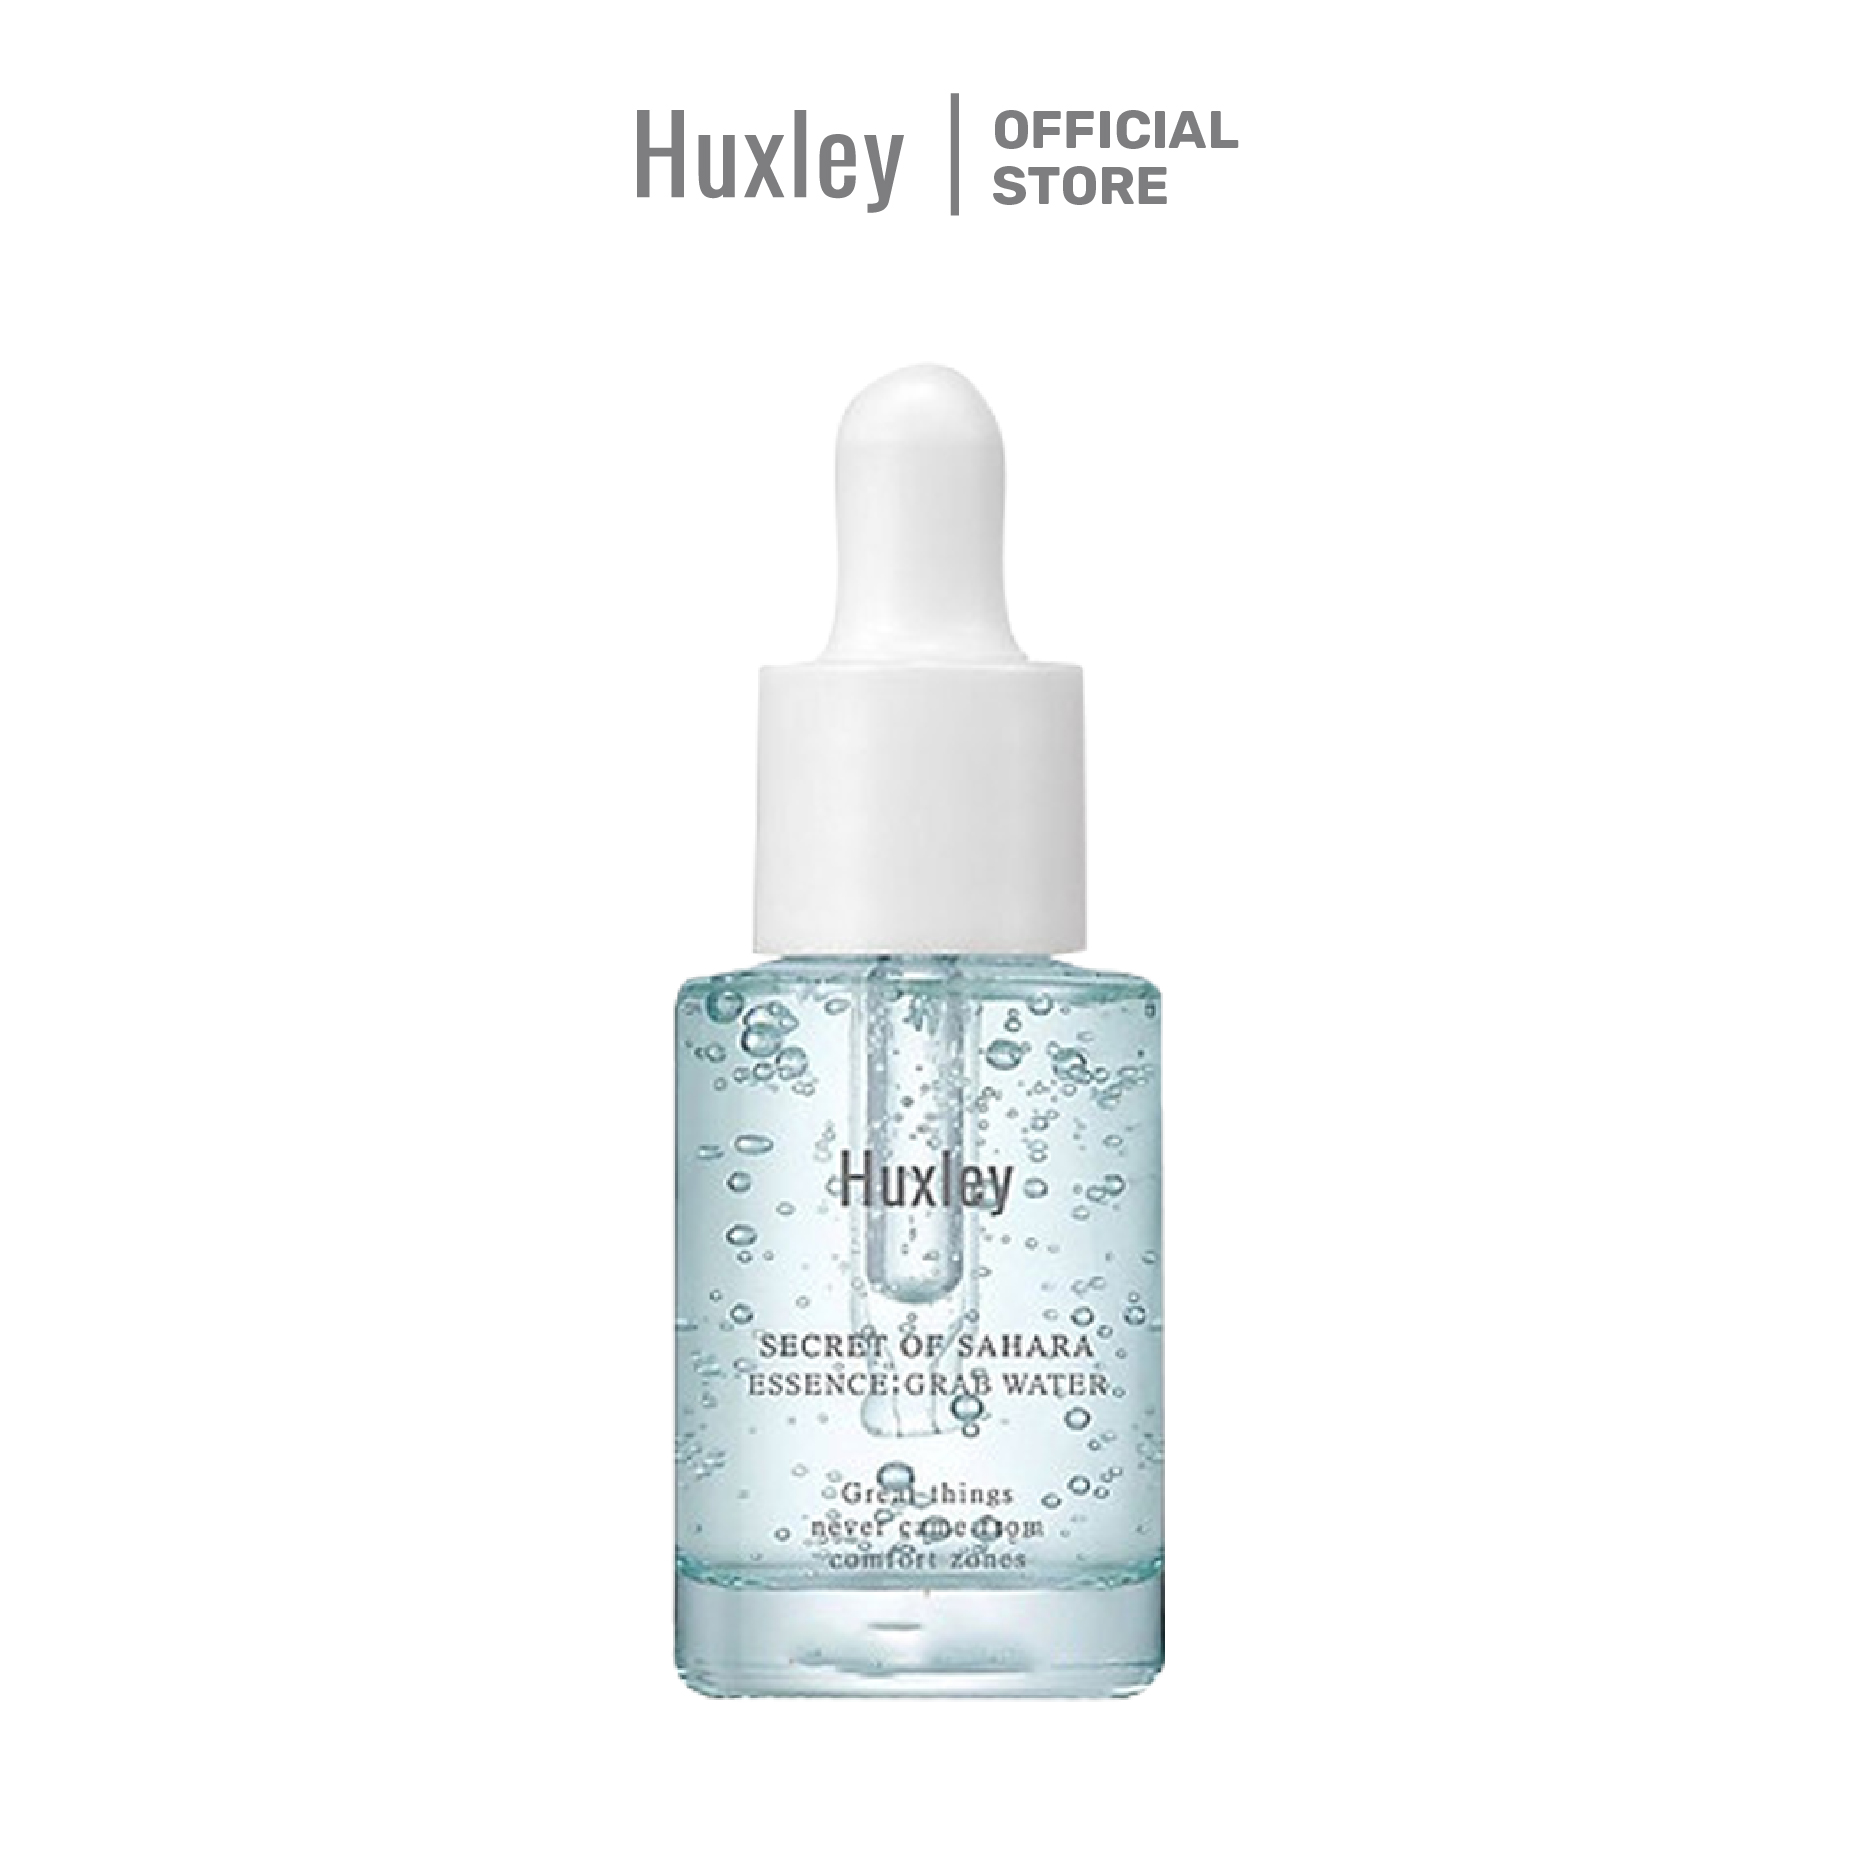 Tinh chất cấp ẩm, hỗ trợ giảm mụn, hỗ trợ giảm mẫn đỏ trên da Huxley Essence Grab Water 5ml